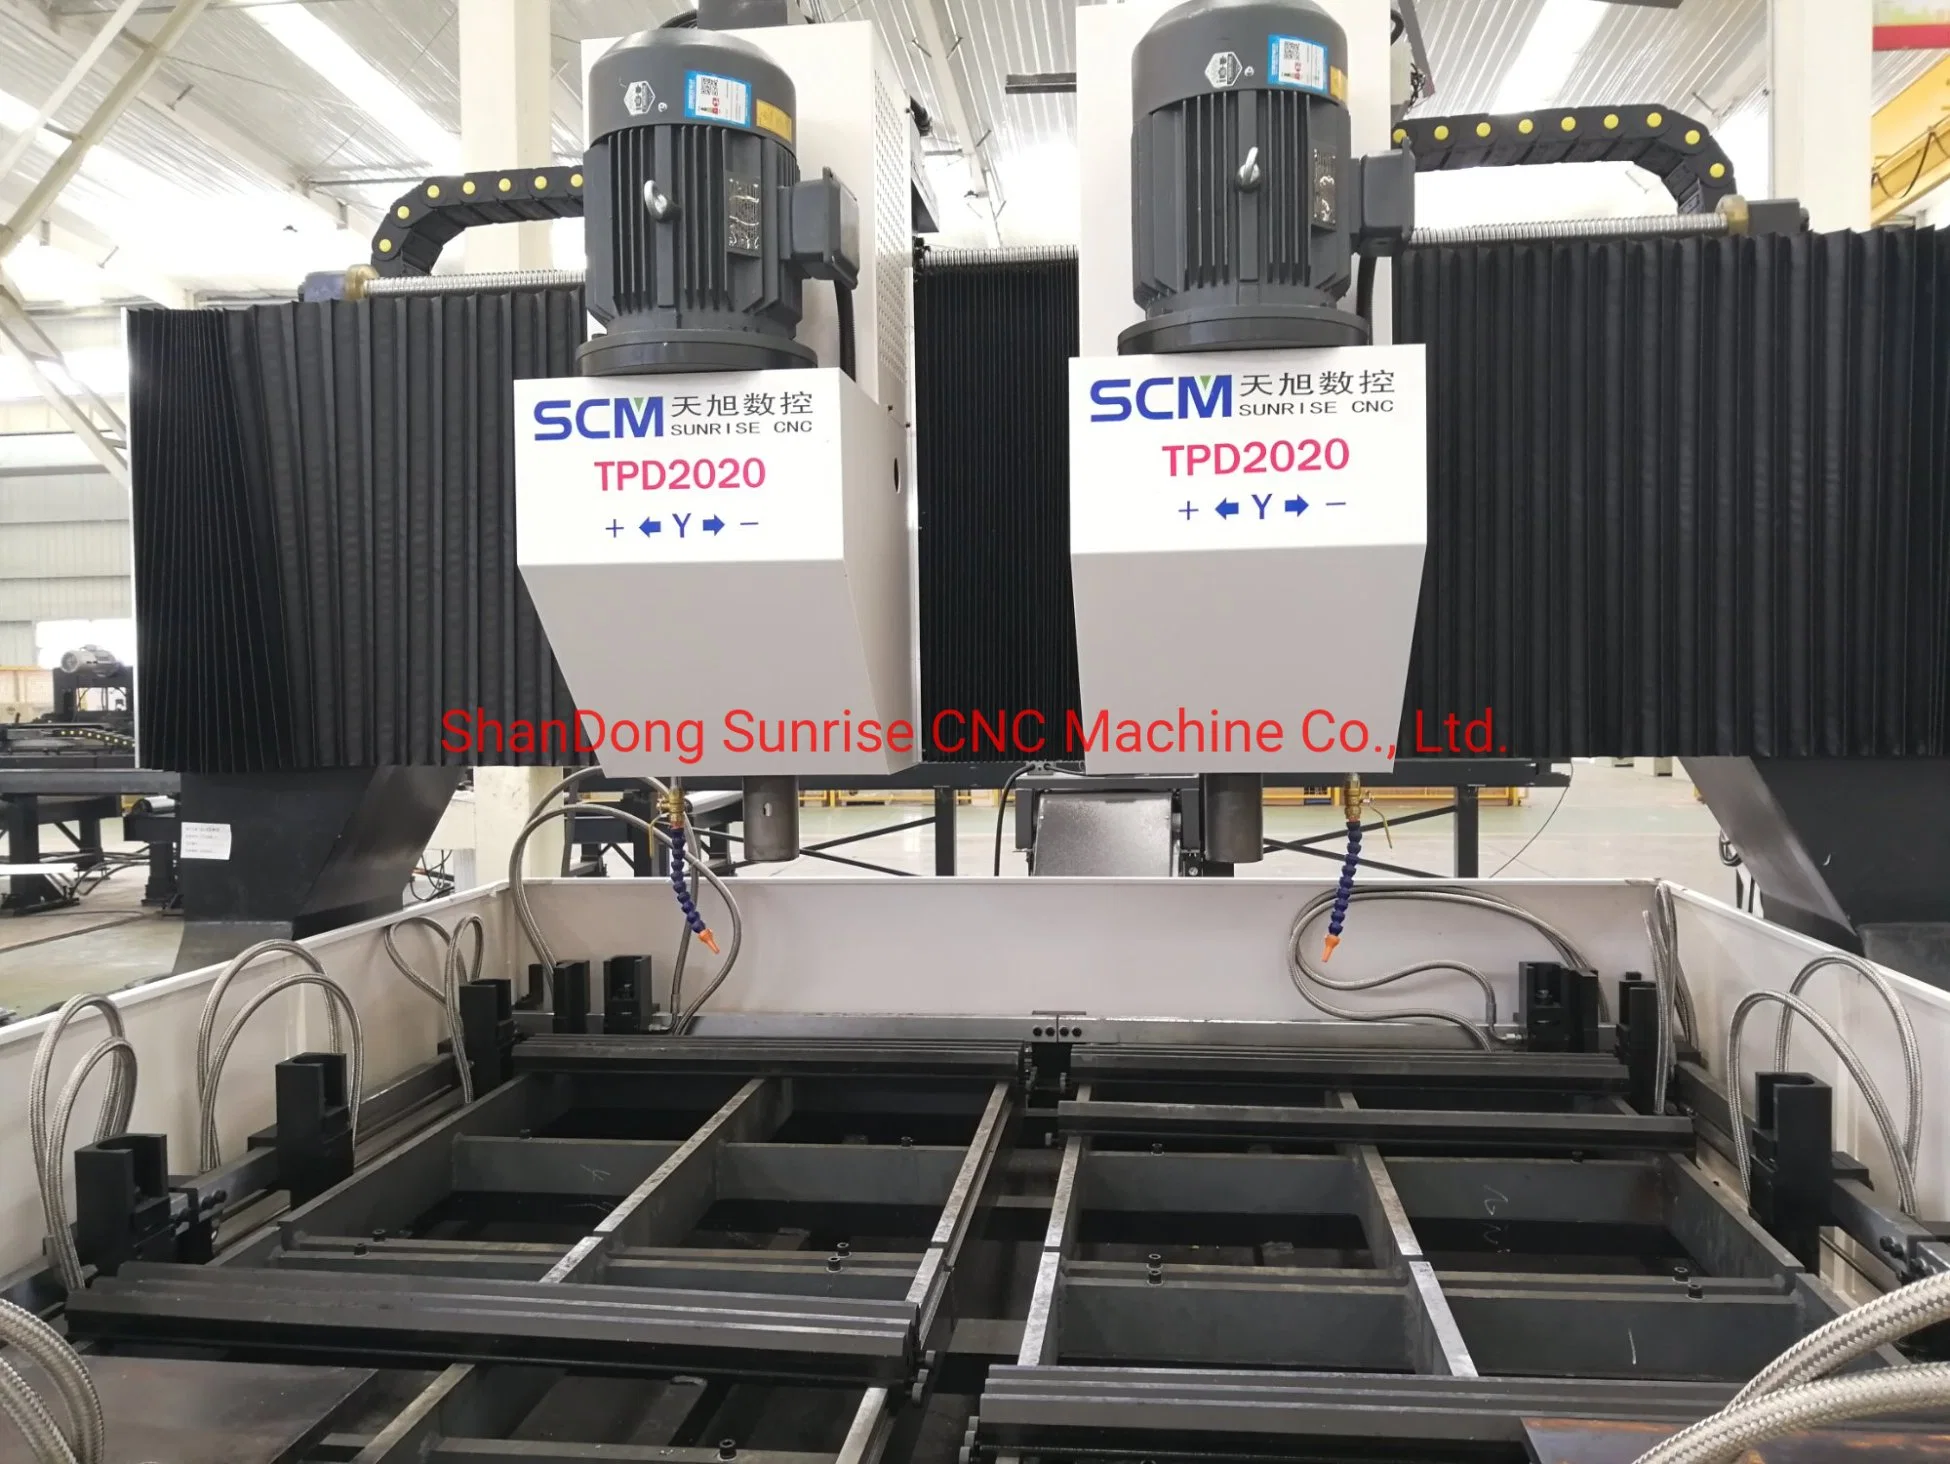 Double-Spindle CNC Máquina de perfuração para a Chapa de Aço (Alimentação Hidráulica)